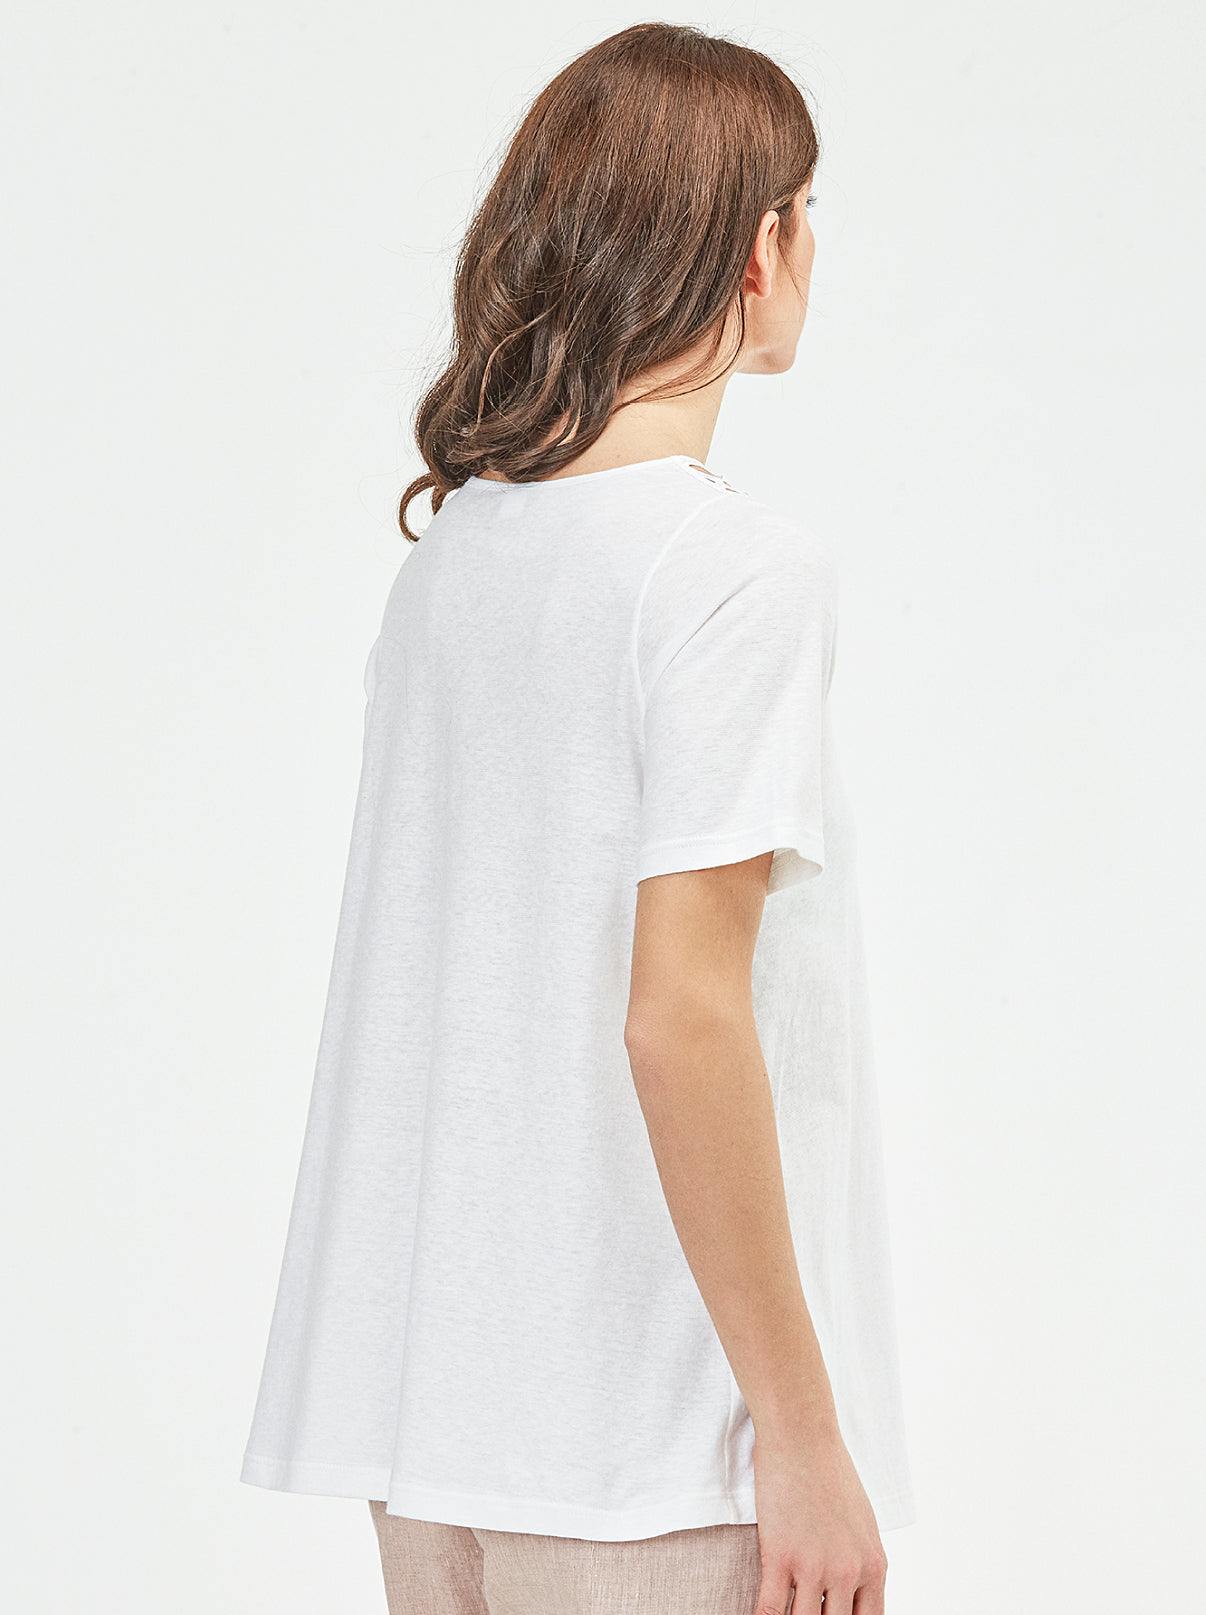 Cotton Linen T-Shirt with Macramé Motif 5734 - Oscalito